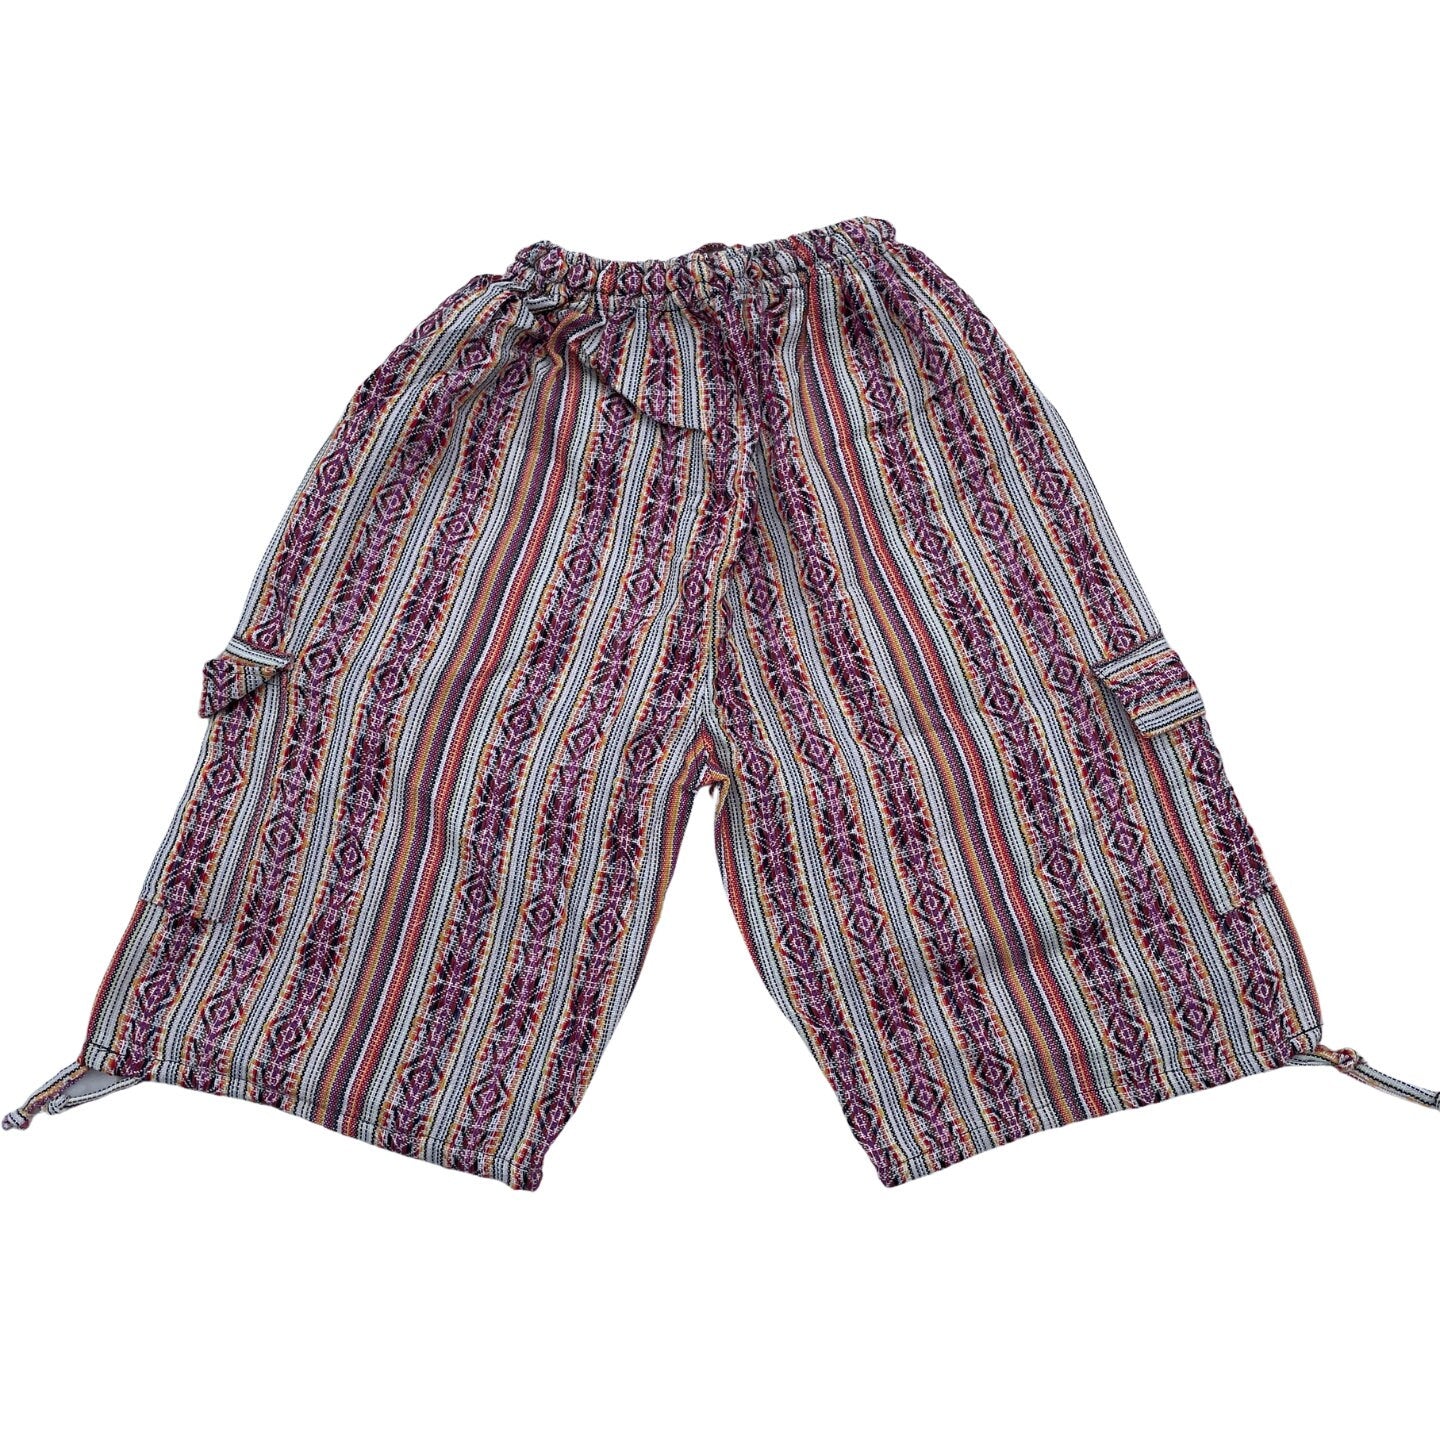 Unisex Woven Boho Cargo Shorts Size L | Hippie Shorts | Tribal Shorts | White Purple Orange